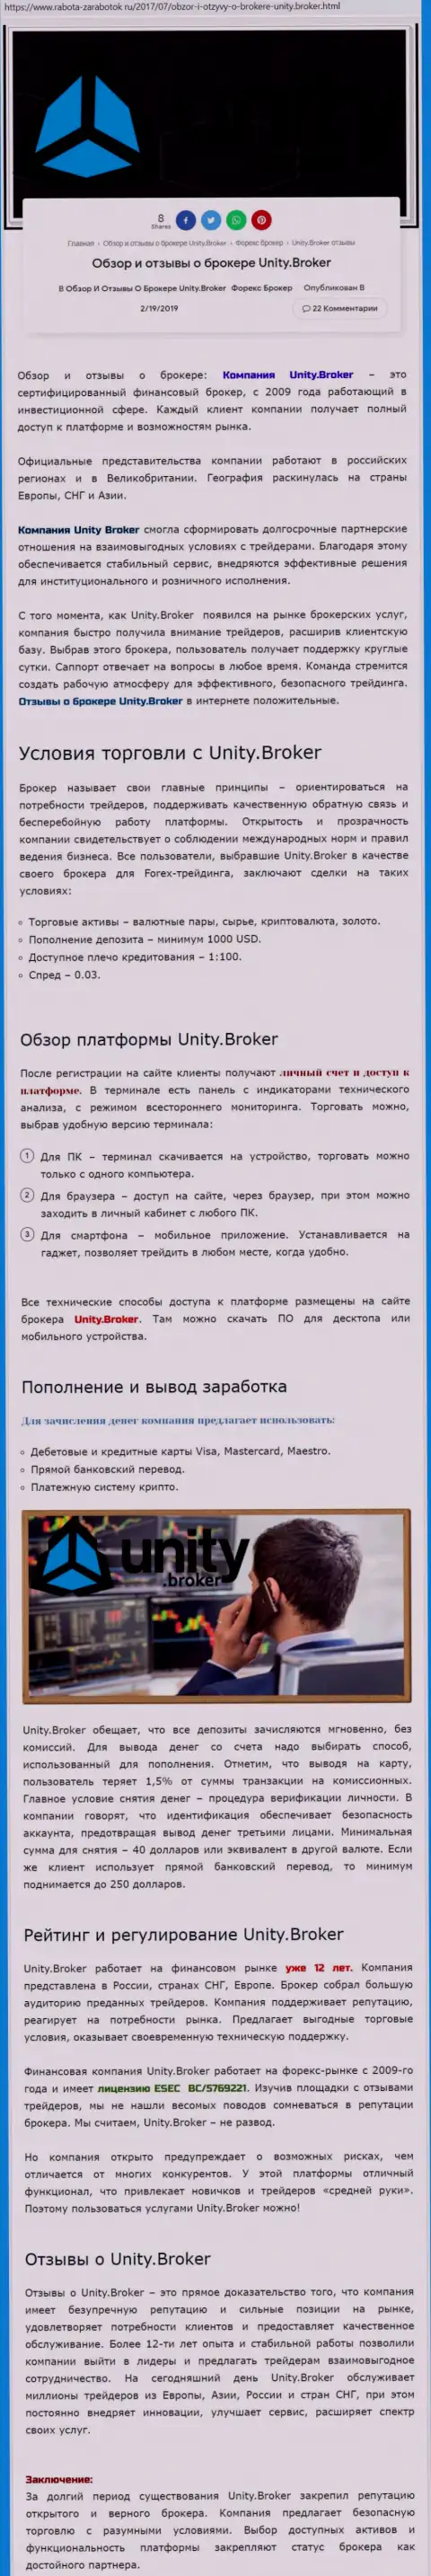 Обзорная информация ФОРЕКС дилинговой компании Unity Broker на сайте Rabota Zarabotok Ru